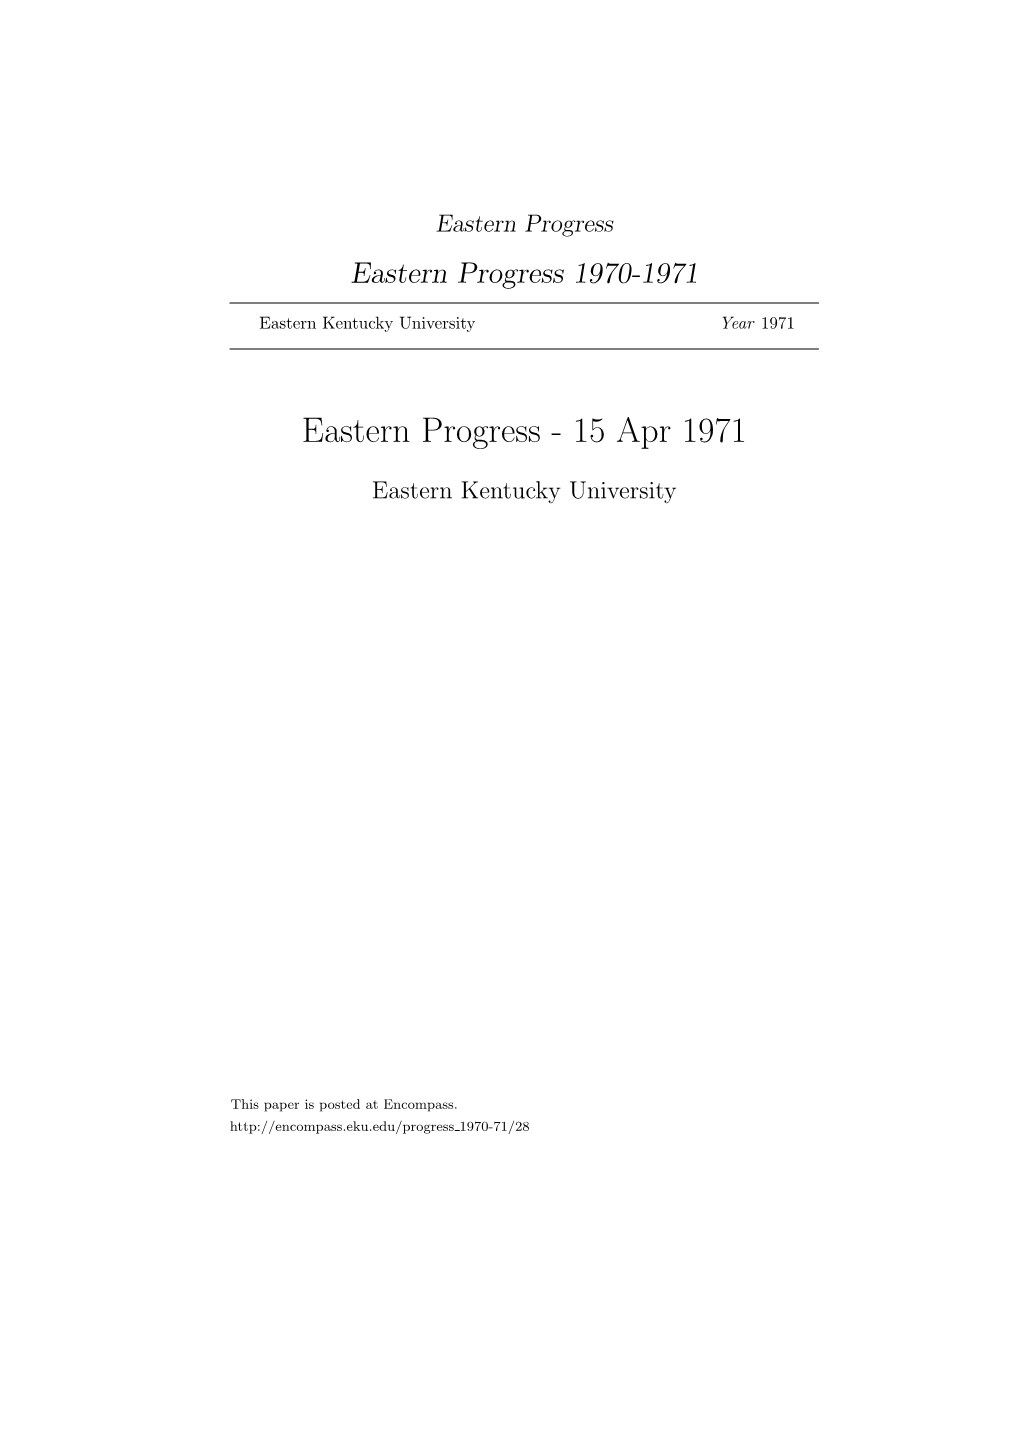 Eastern Progress Eastern Progress 1970-1971